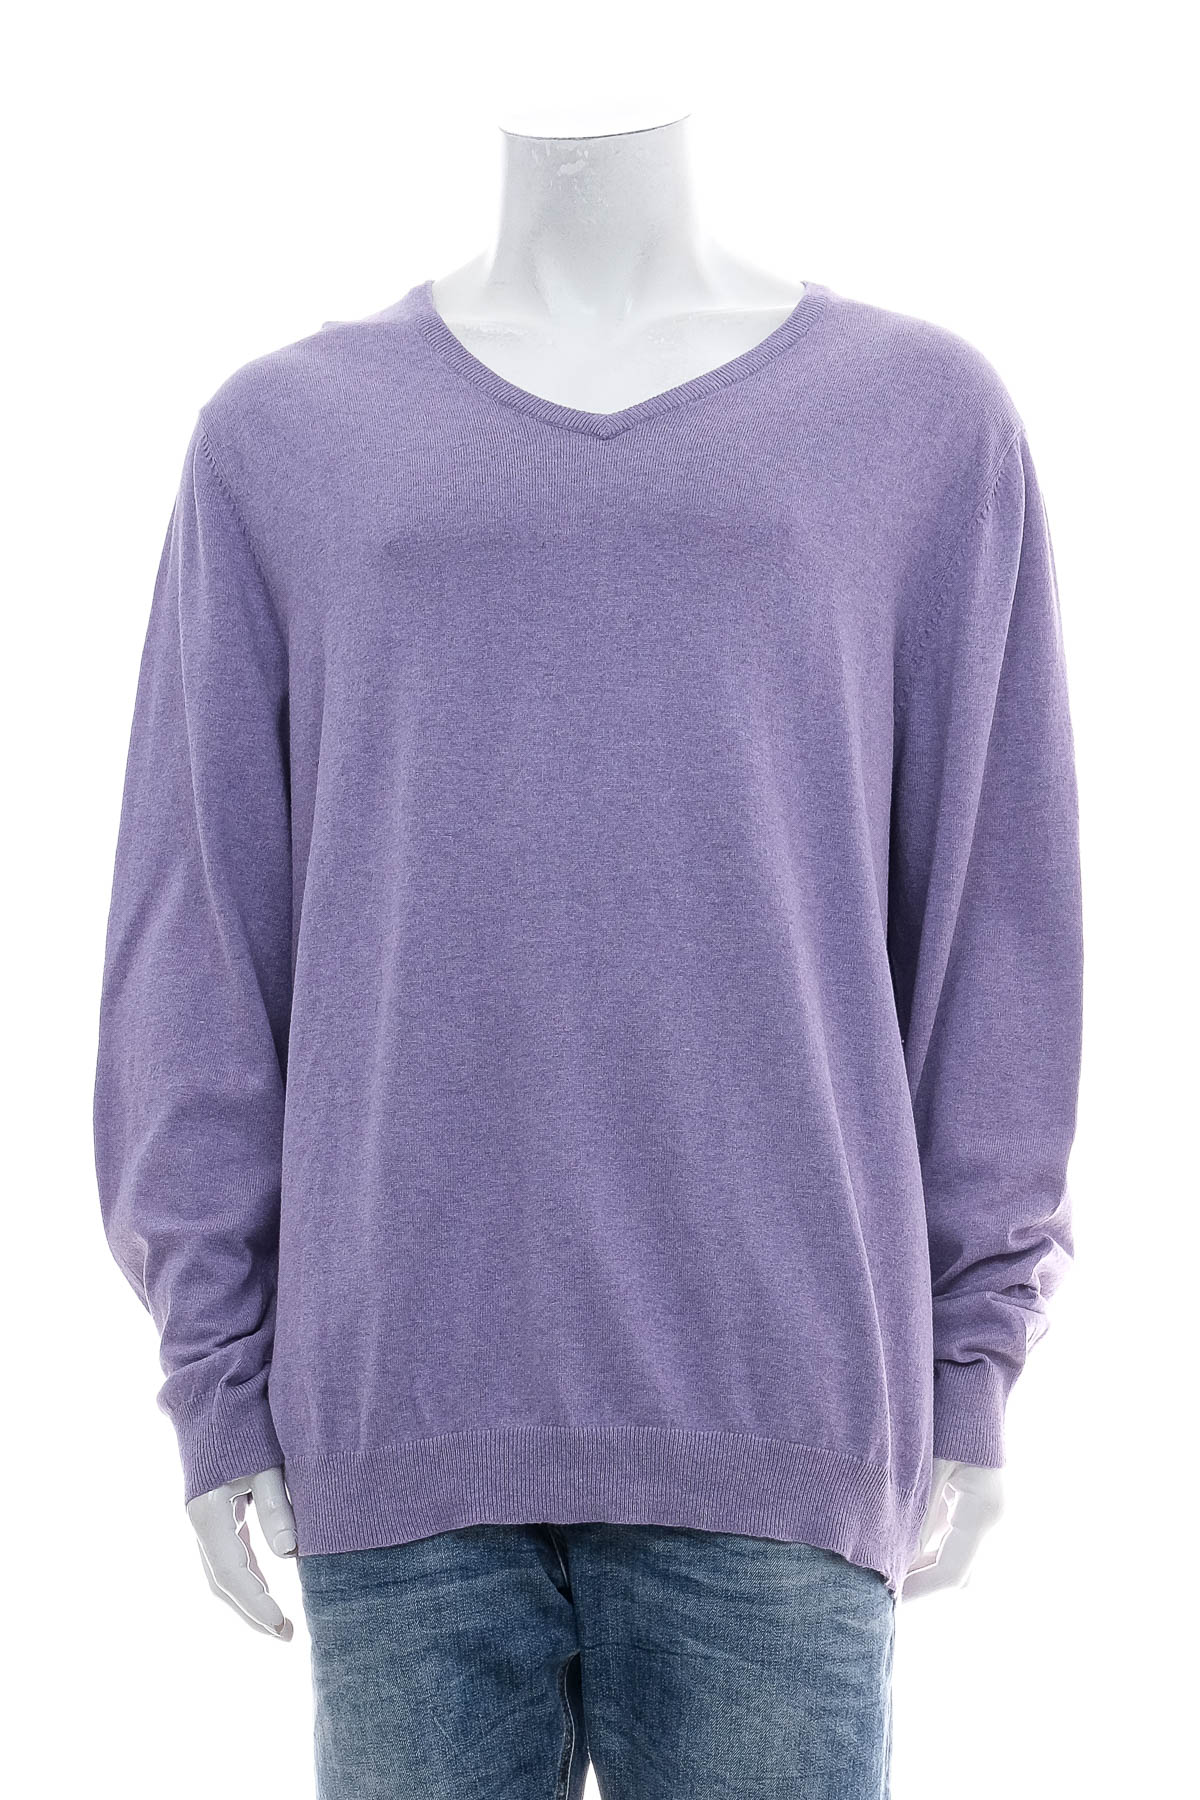 Men's sweater - Merona - 0